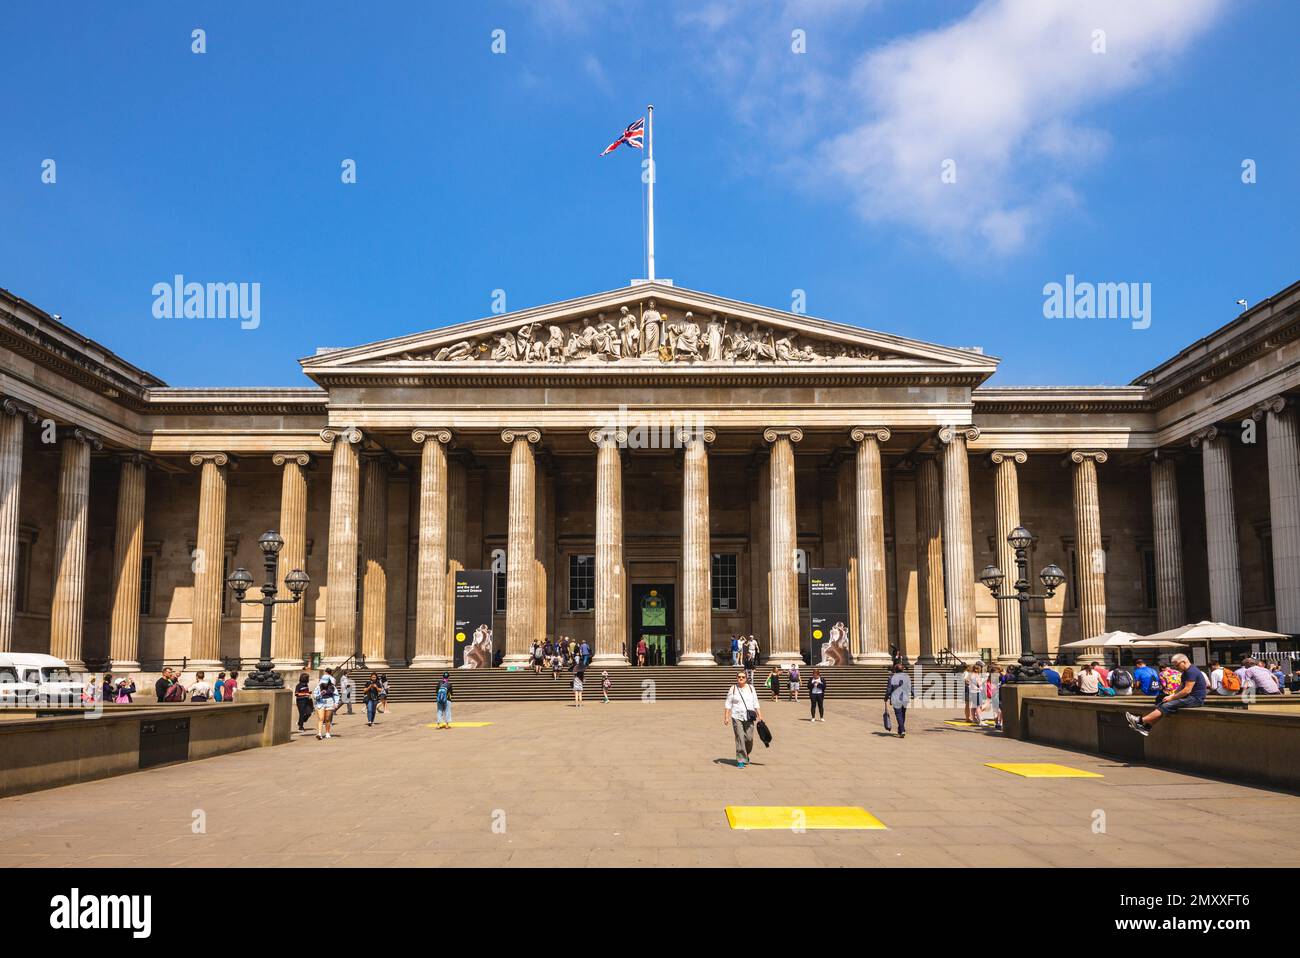 28. Juni 2018: Haupteingang des British Museum, ein öffentliches Museum, das sich der Geschichte, Kunst und Kultur der Menschheit widmet, befindet sich in London, Großbritannien. Es war Establis Stockfoto